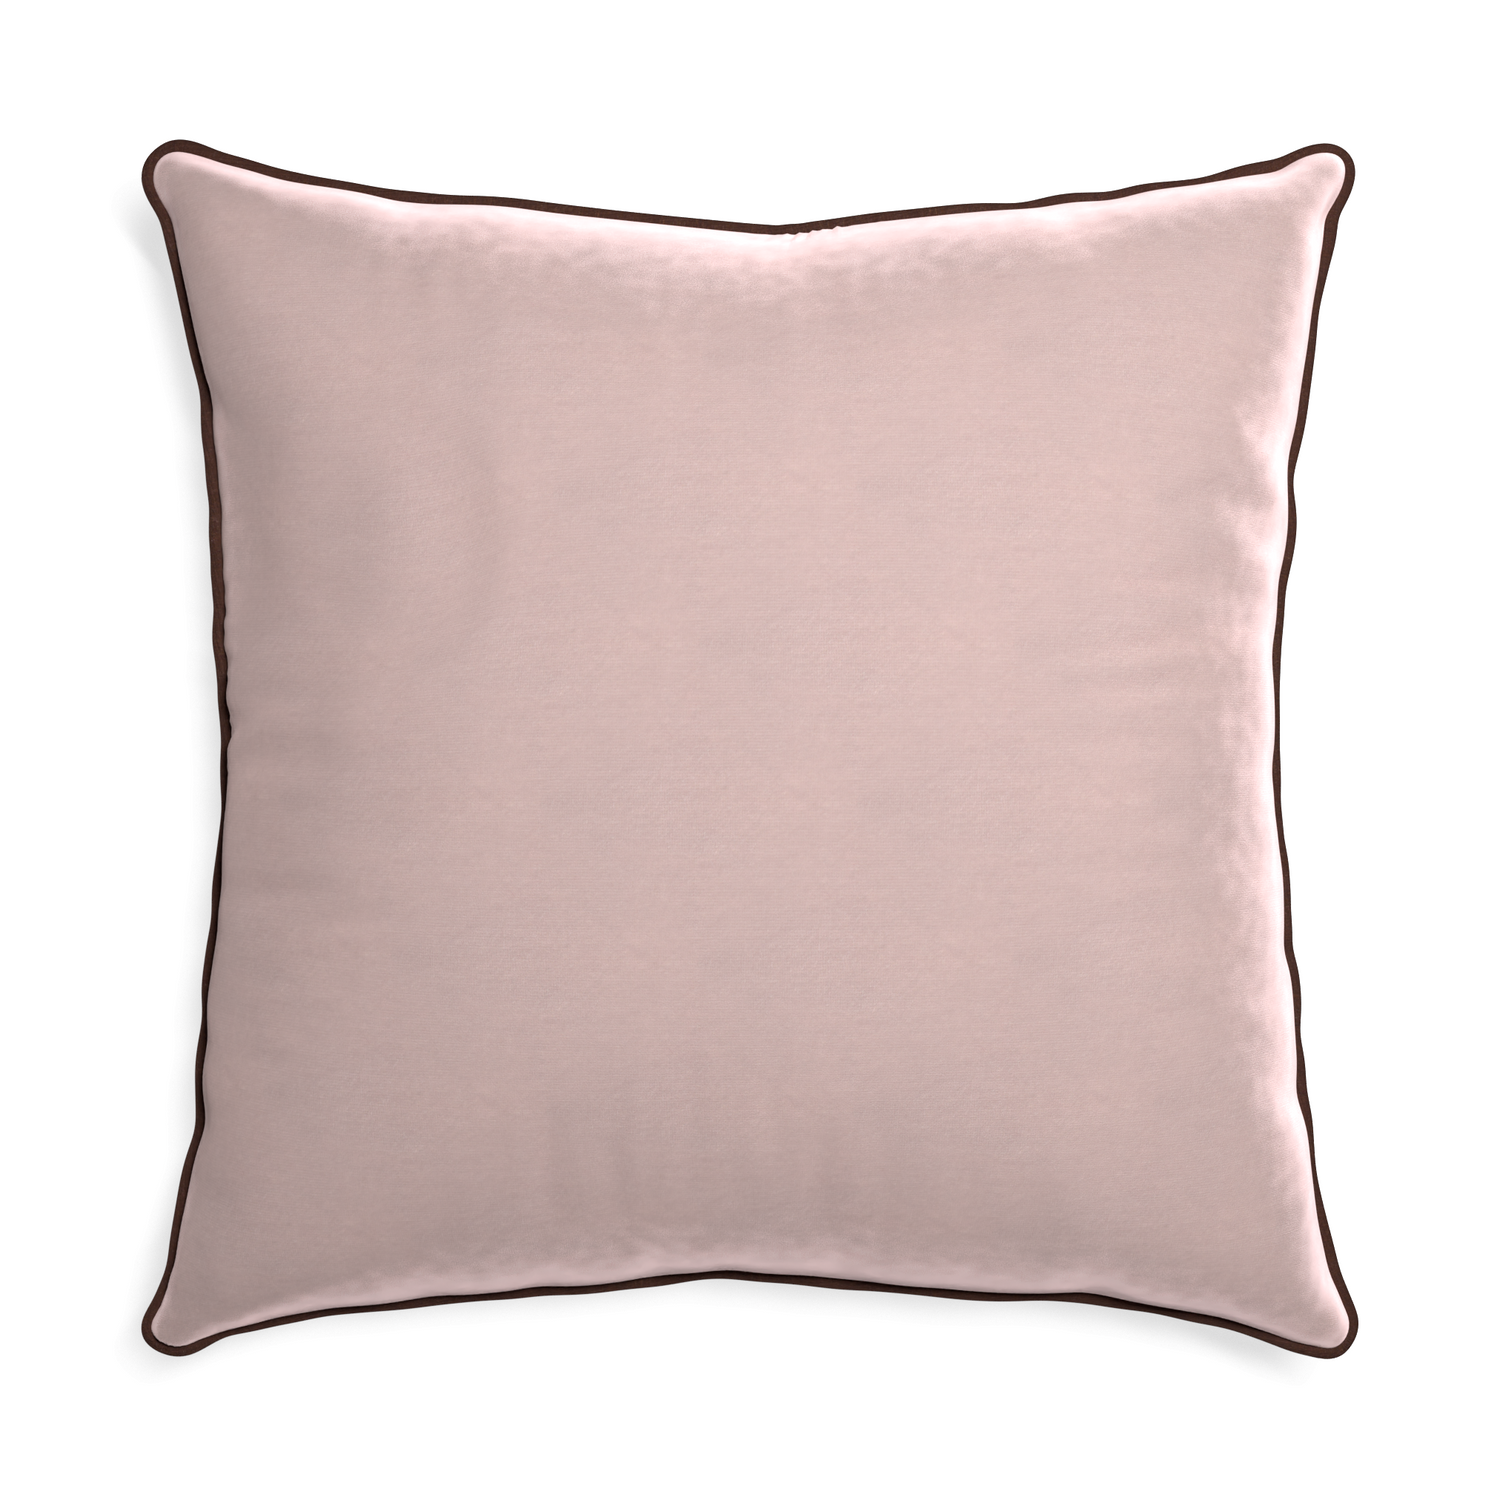 Euro-sham rose velvet custom pillow with w piping on white background